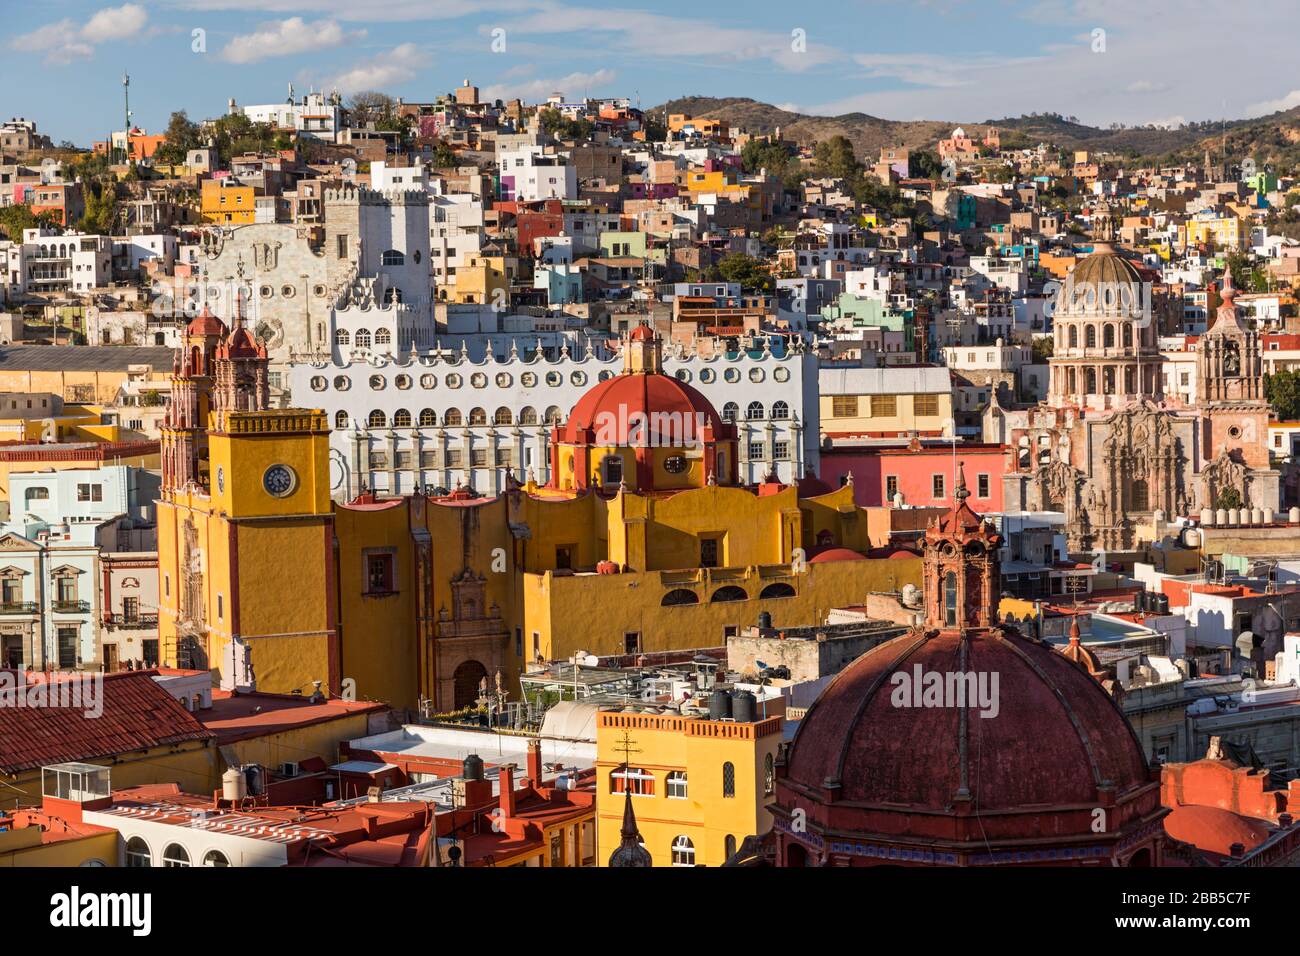 Mexique, les gratte-ciel de Guanajuato sont vus de Monumento a El Pïpila. Guanajuato, site du patrimoine mondial de l'UNESCO Banque D'Images